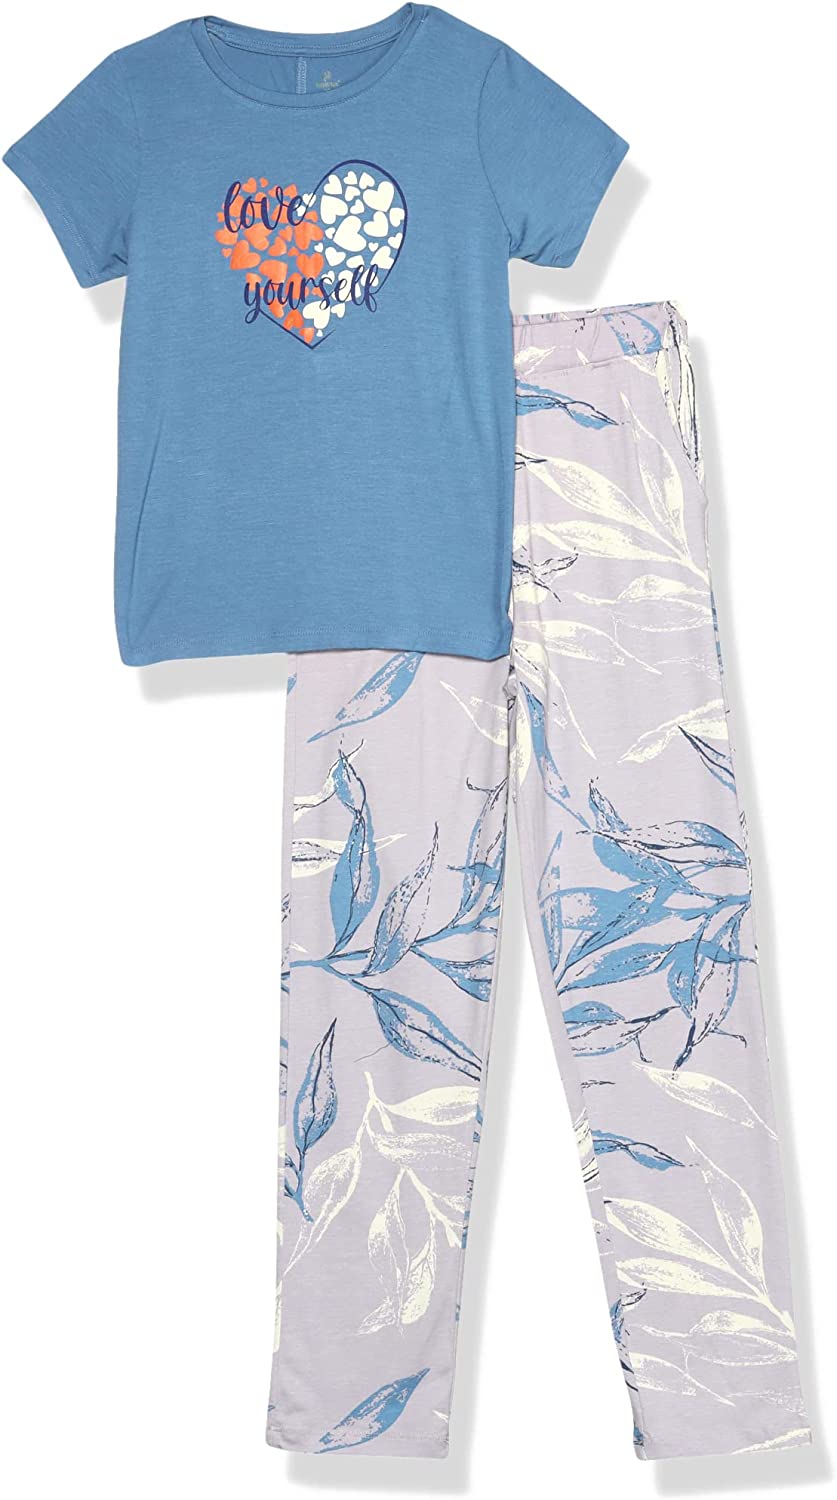 Girls' pajamas from Redcotton